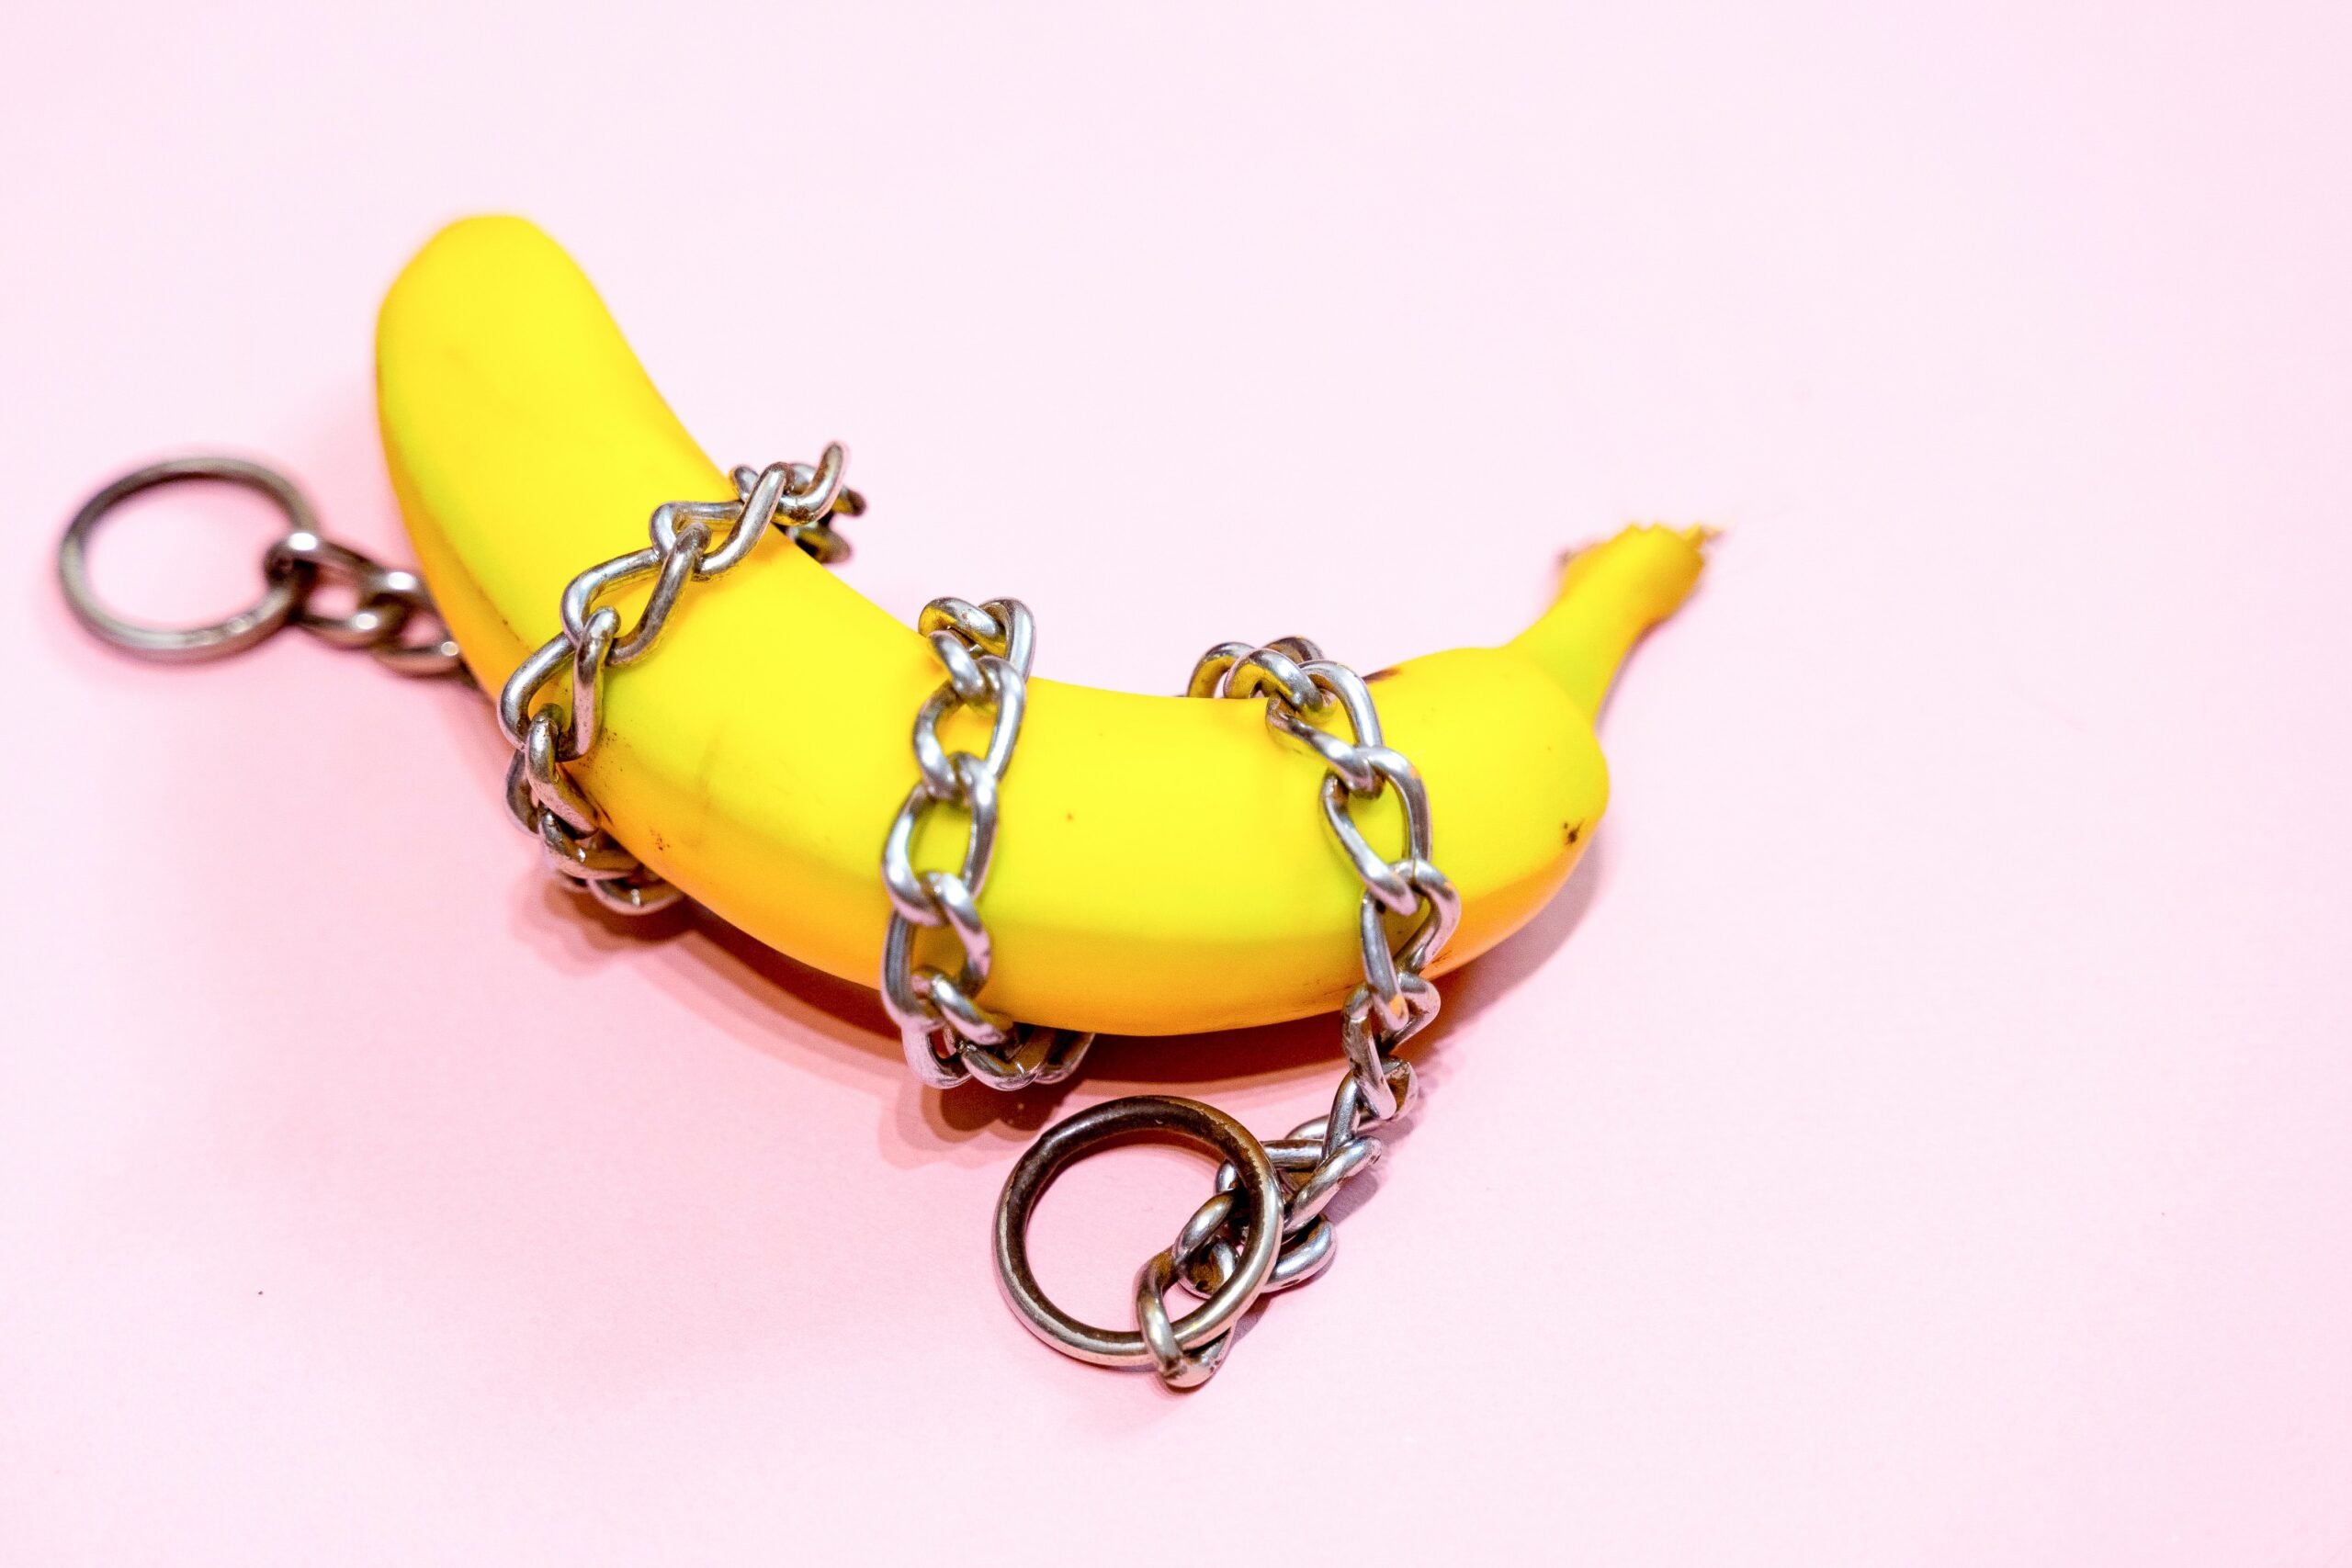 Say “No” to No Nut November: The Health Benefits of Masturbation